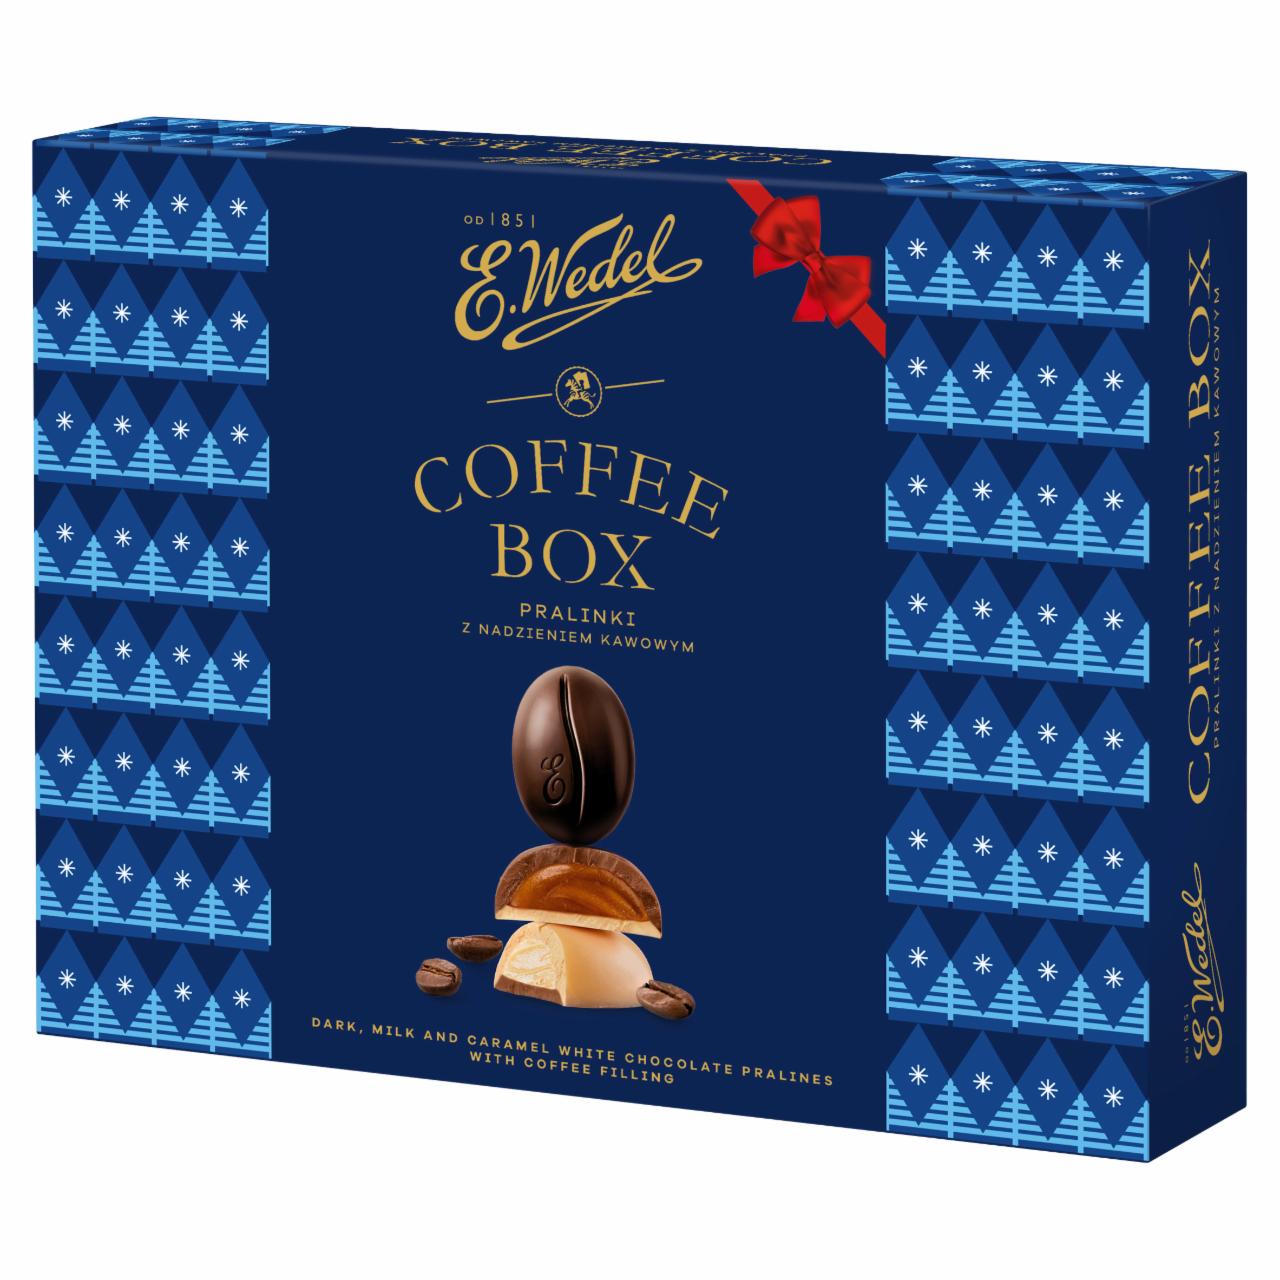 Zdjęcia - E. Wedel Coffee Box Pralinki z nadzieniem kakaowym 200 g